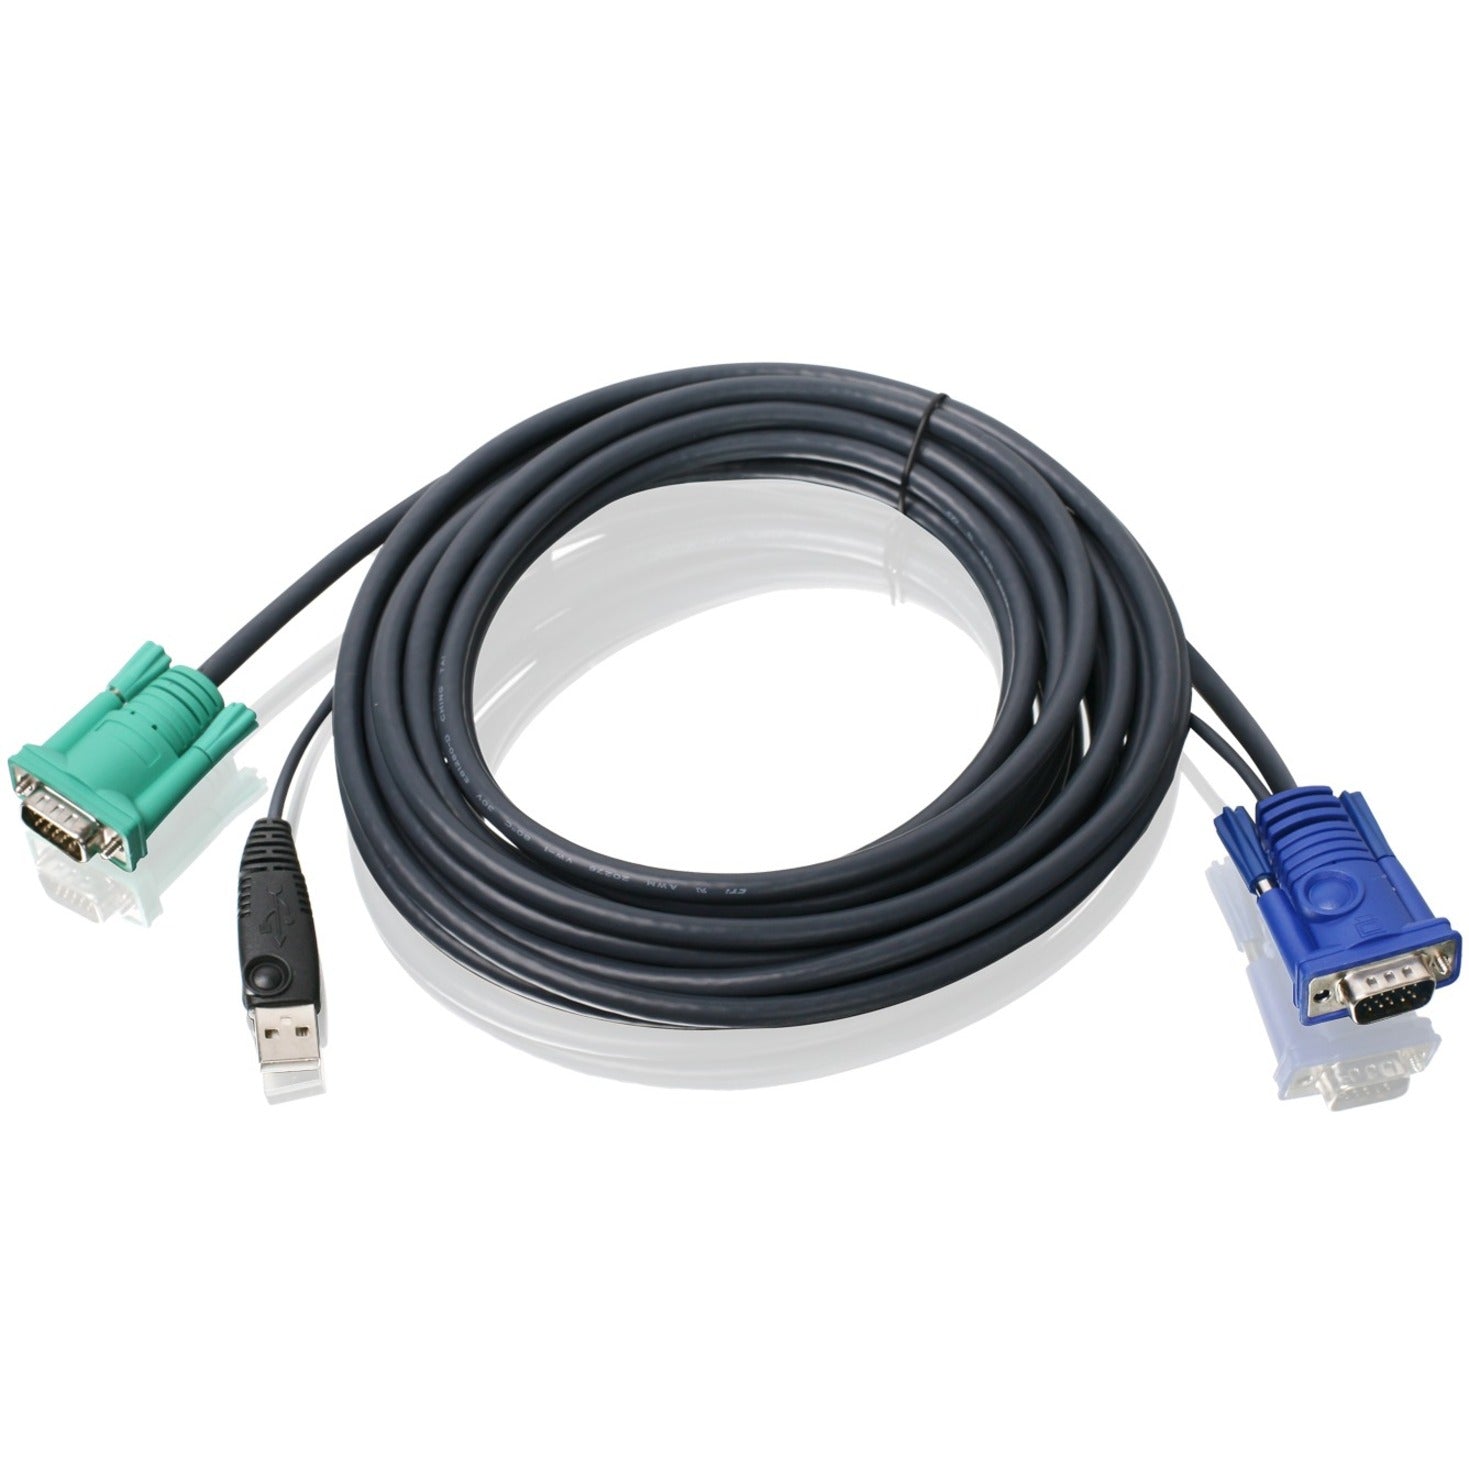 كابل KVM USB في ايهوجير G2L5205U - 16 قدم - مرن، حماية EMI/RF، مقاوم للتآكل، اللون أسود.